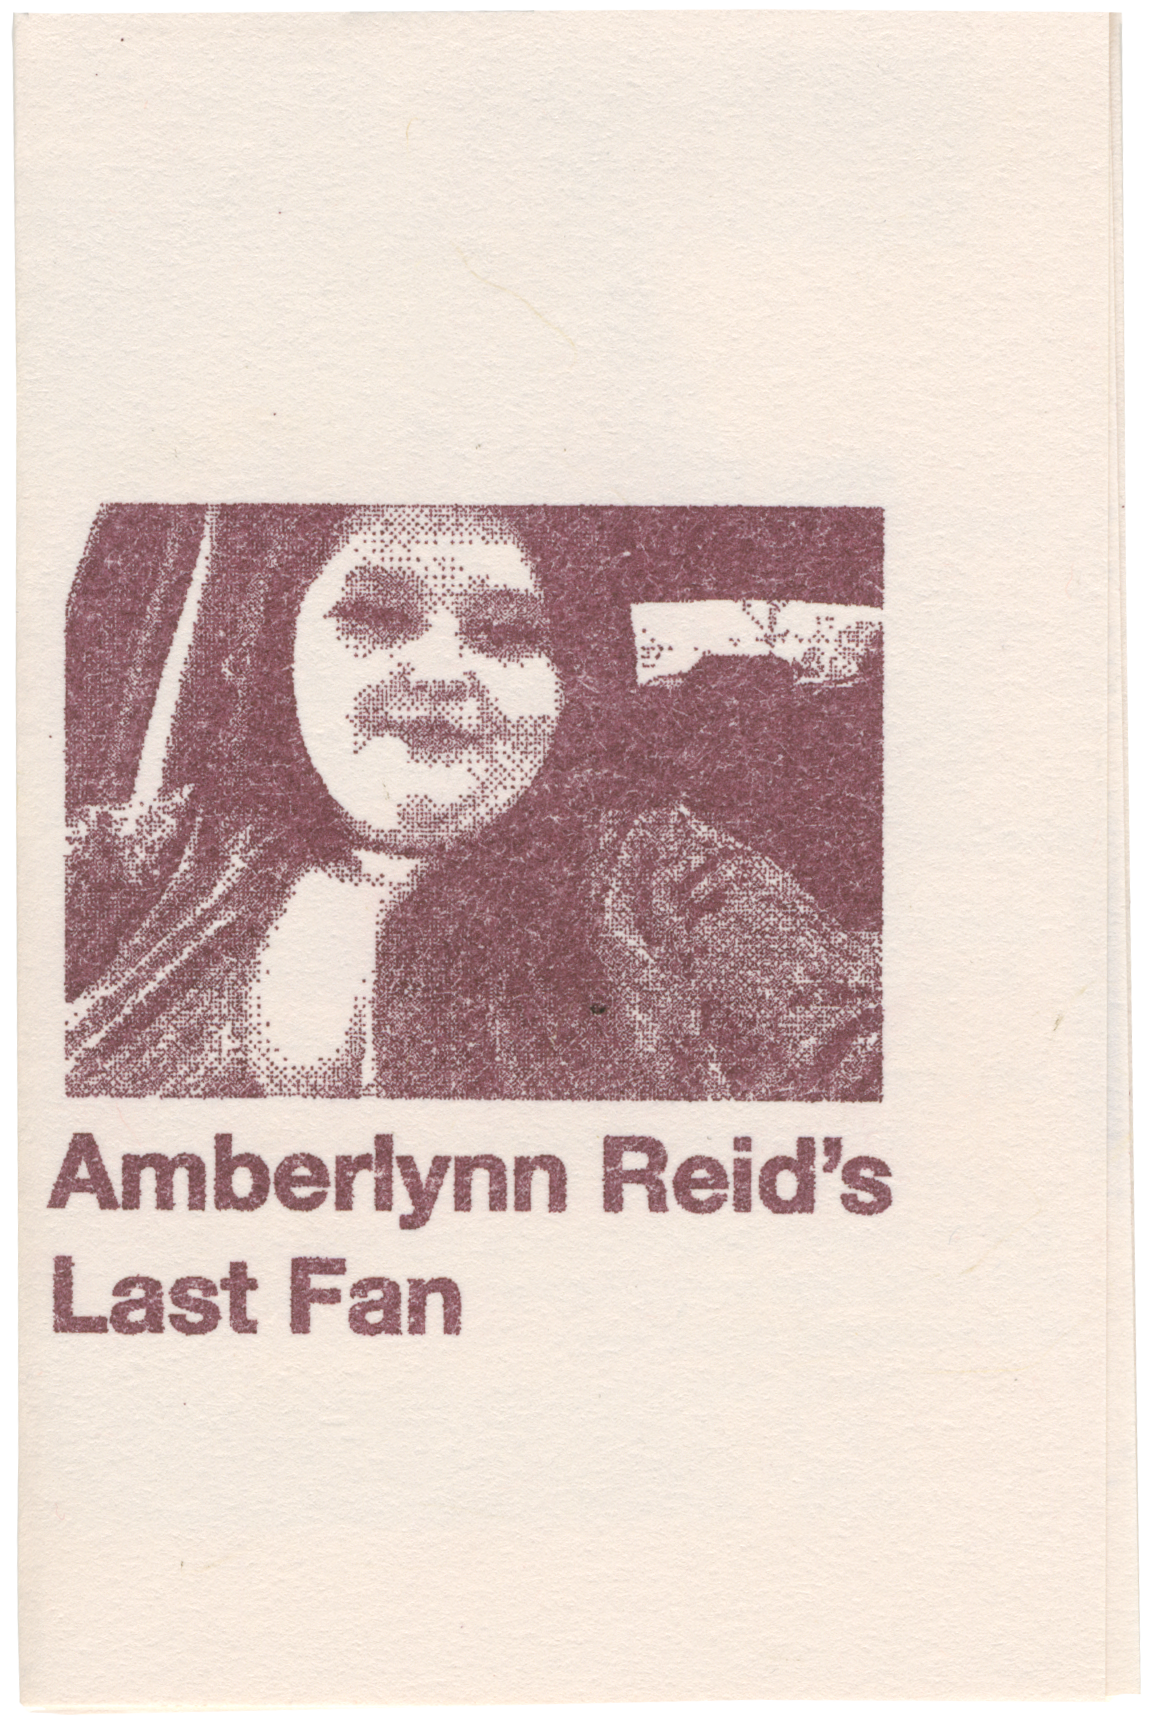 Amberlynn Reid's Last Fan